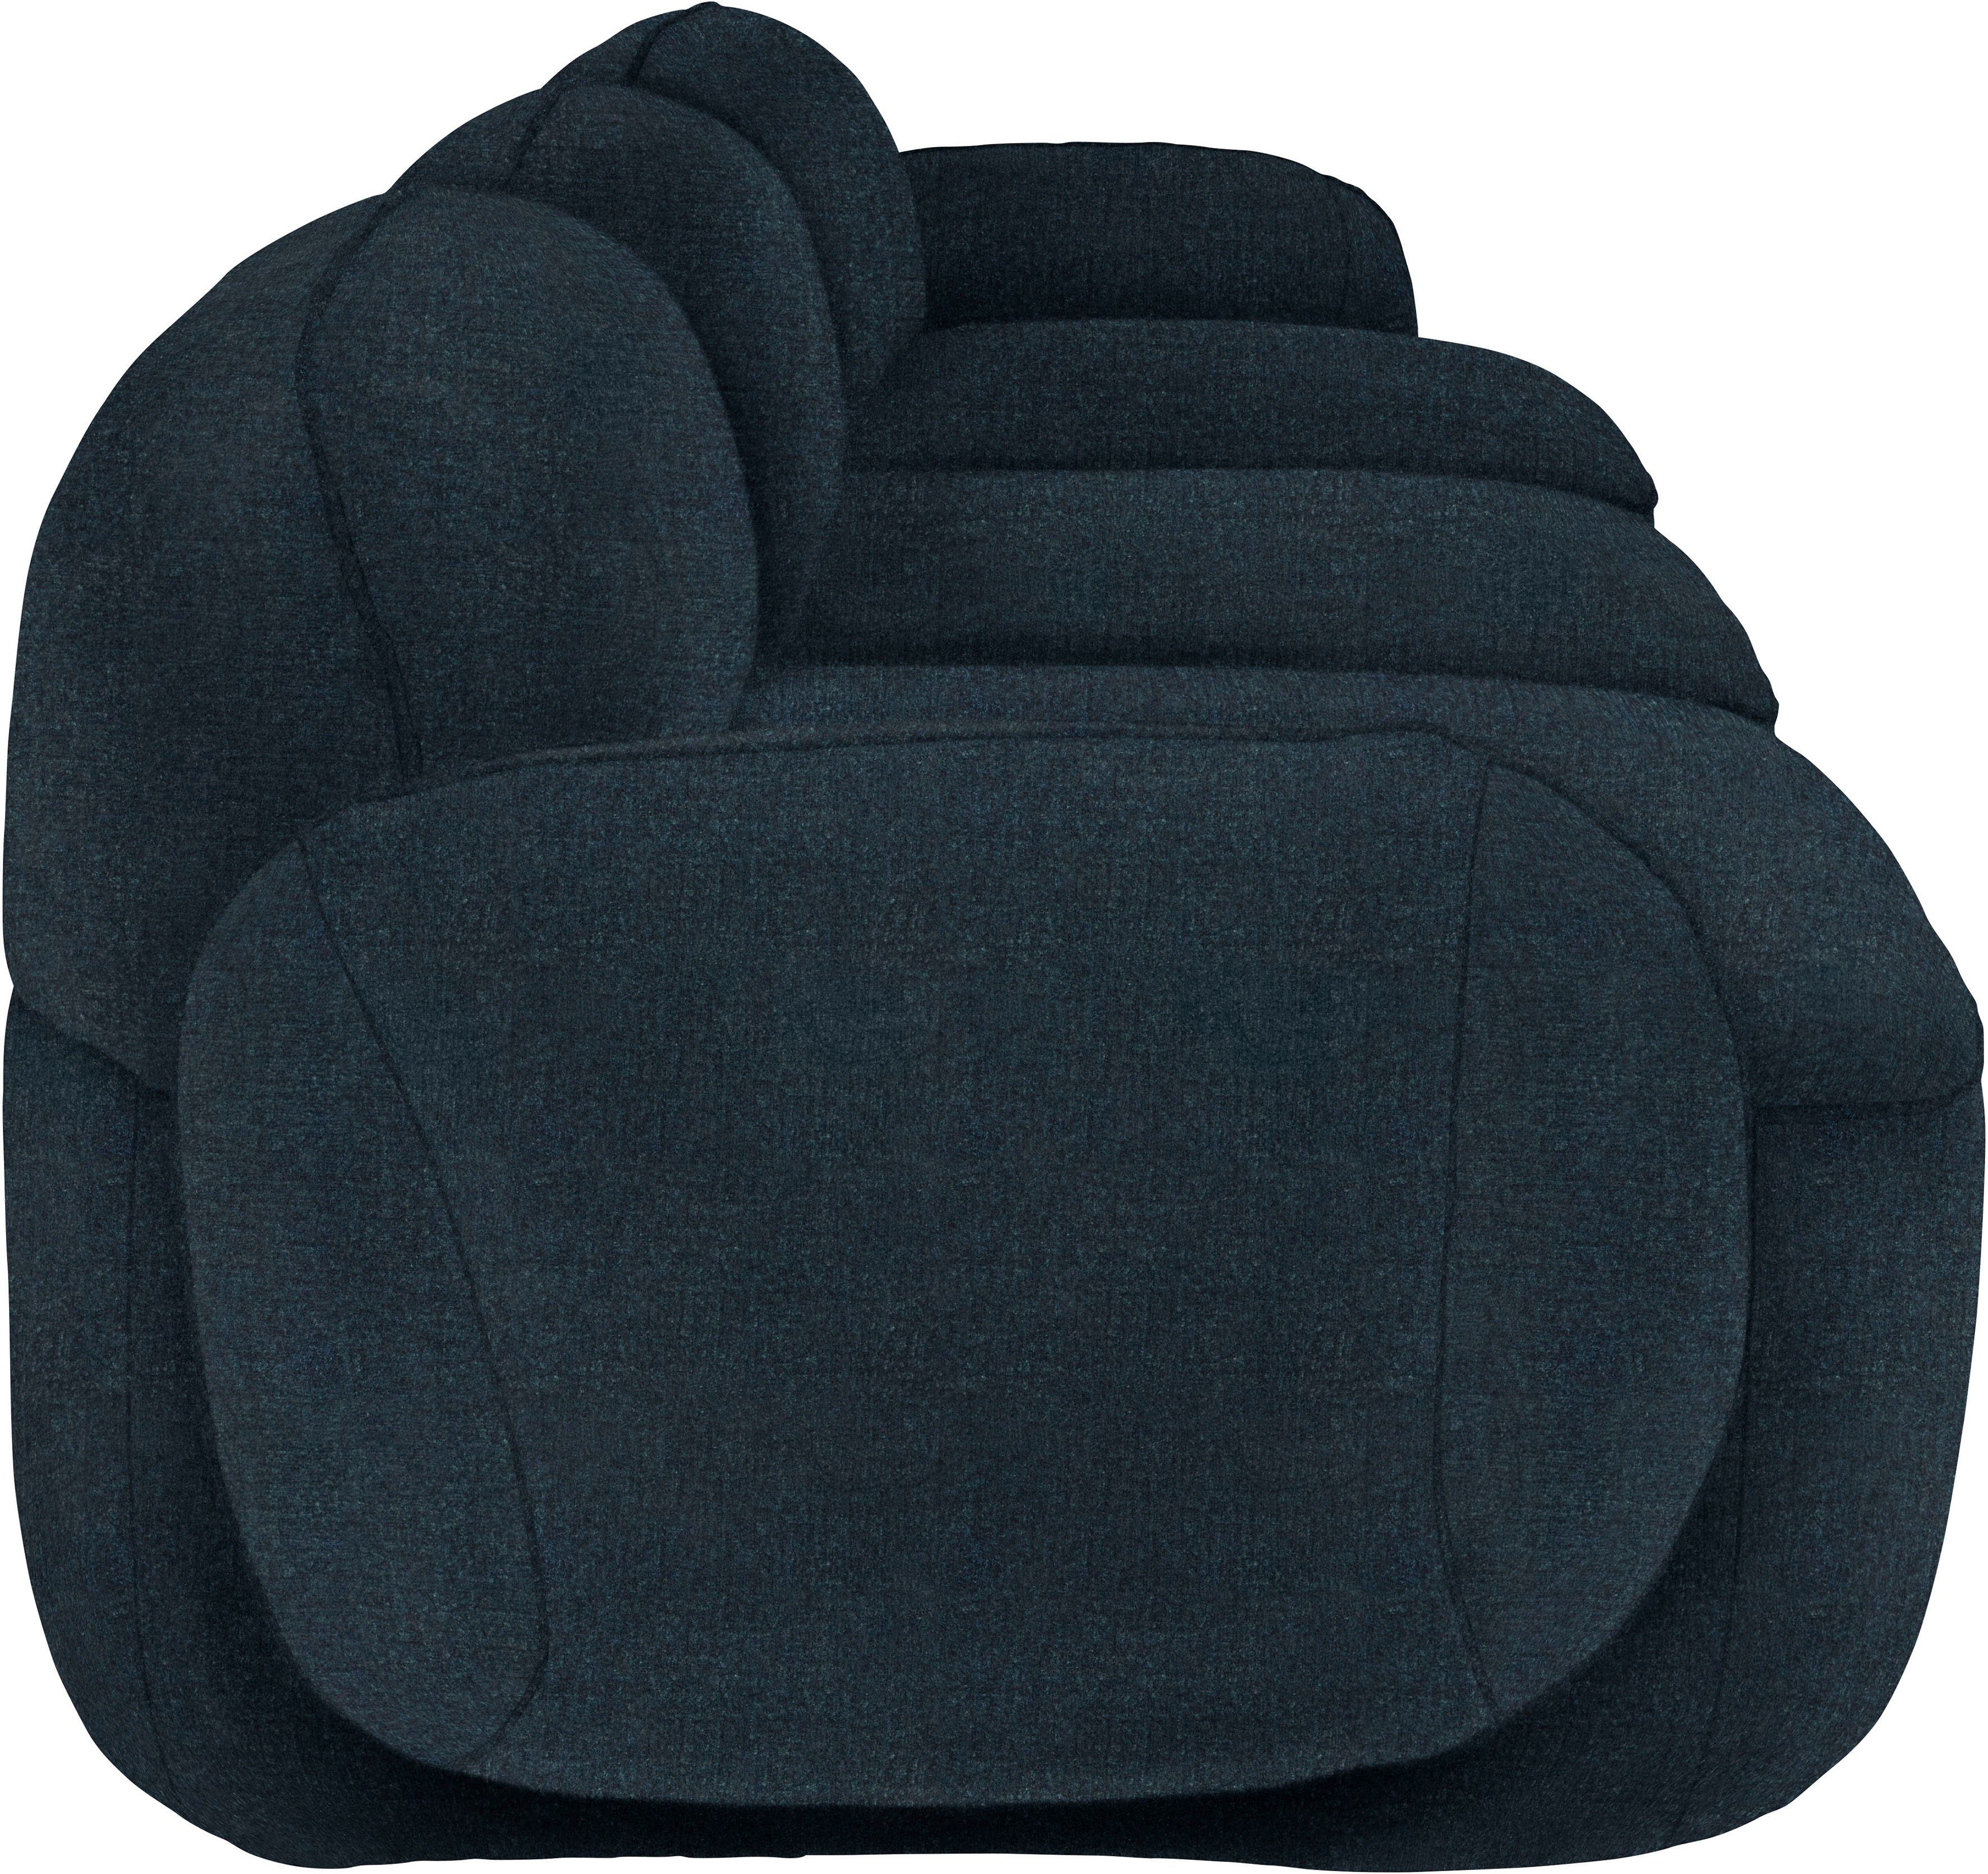 furninova 3,5-Sitzer Bubble, komfortabel durch Design Memoryschaum, im skandinavischen